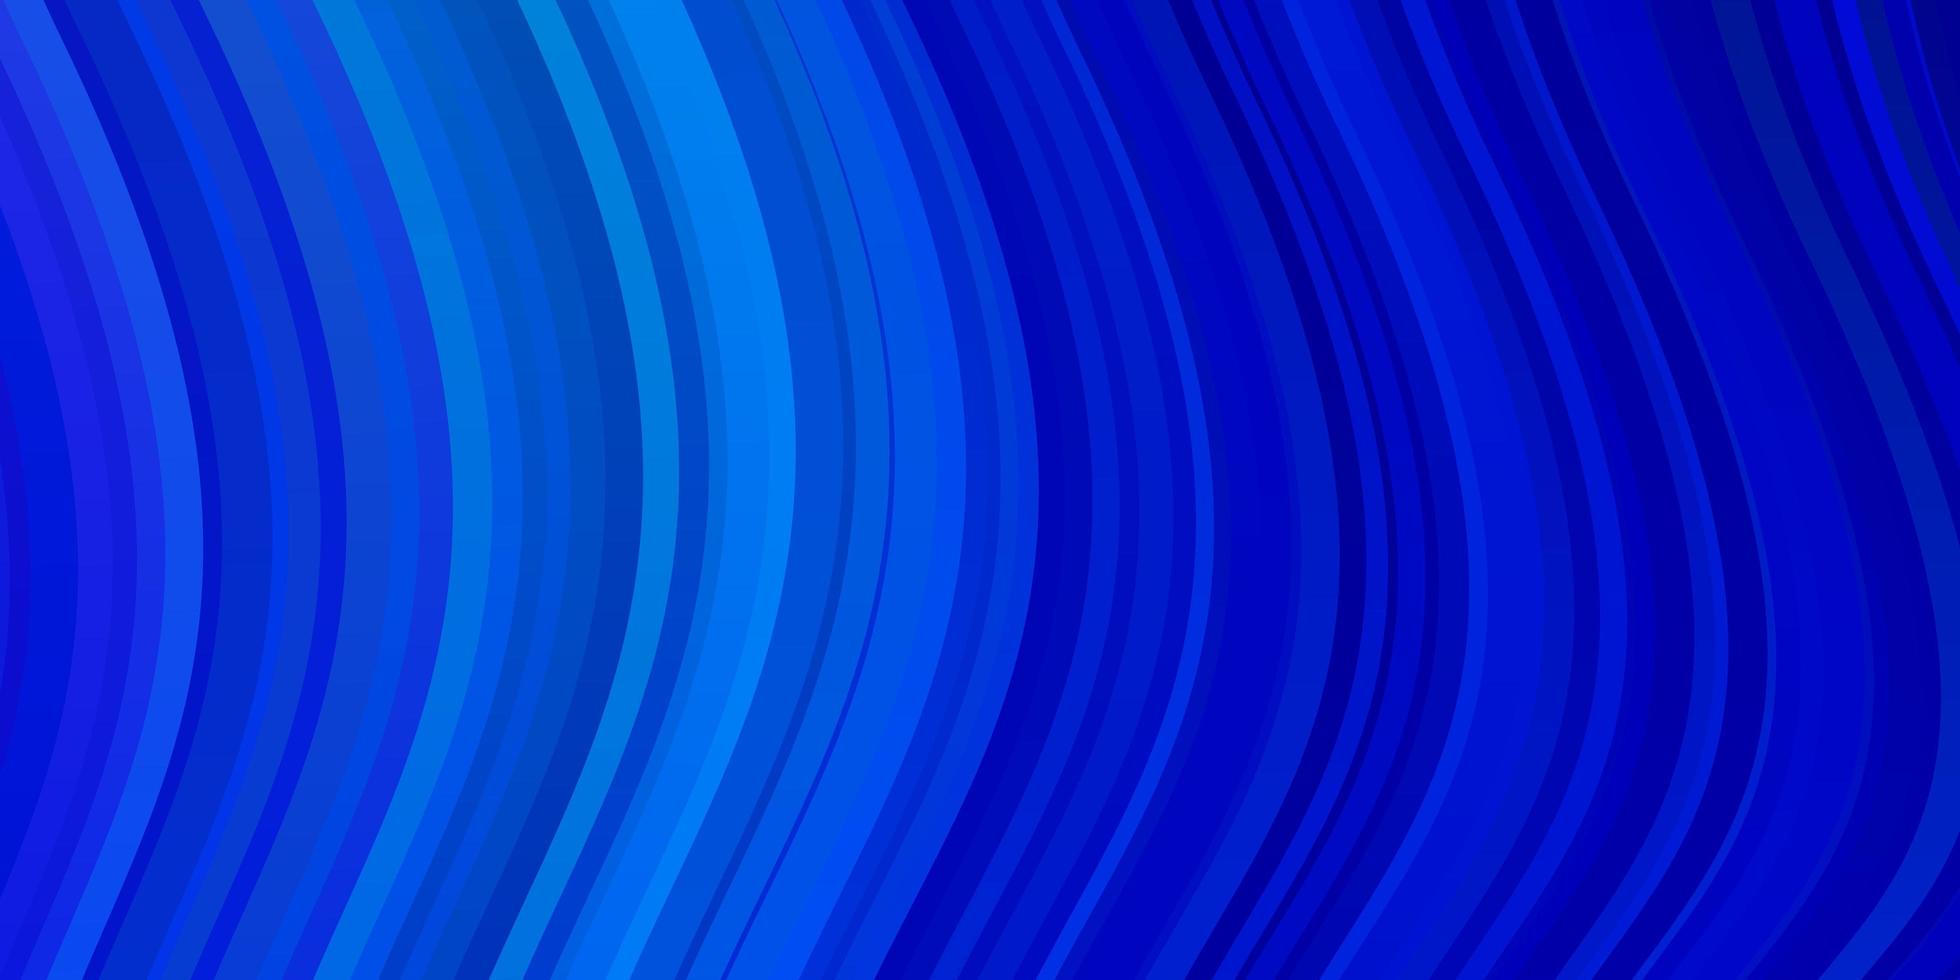 hellblauer Vektorhintergrund mit Linien. vektor